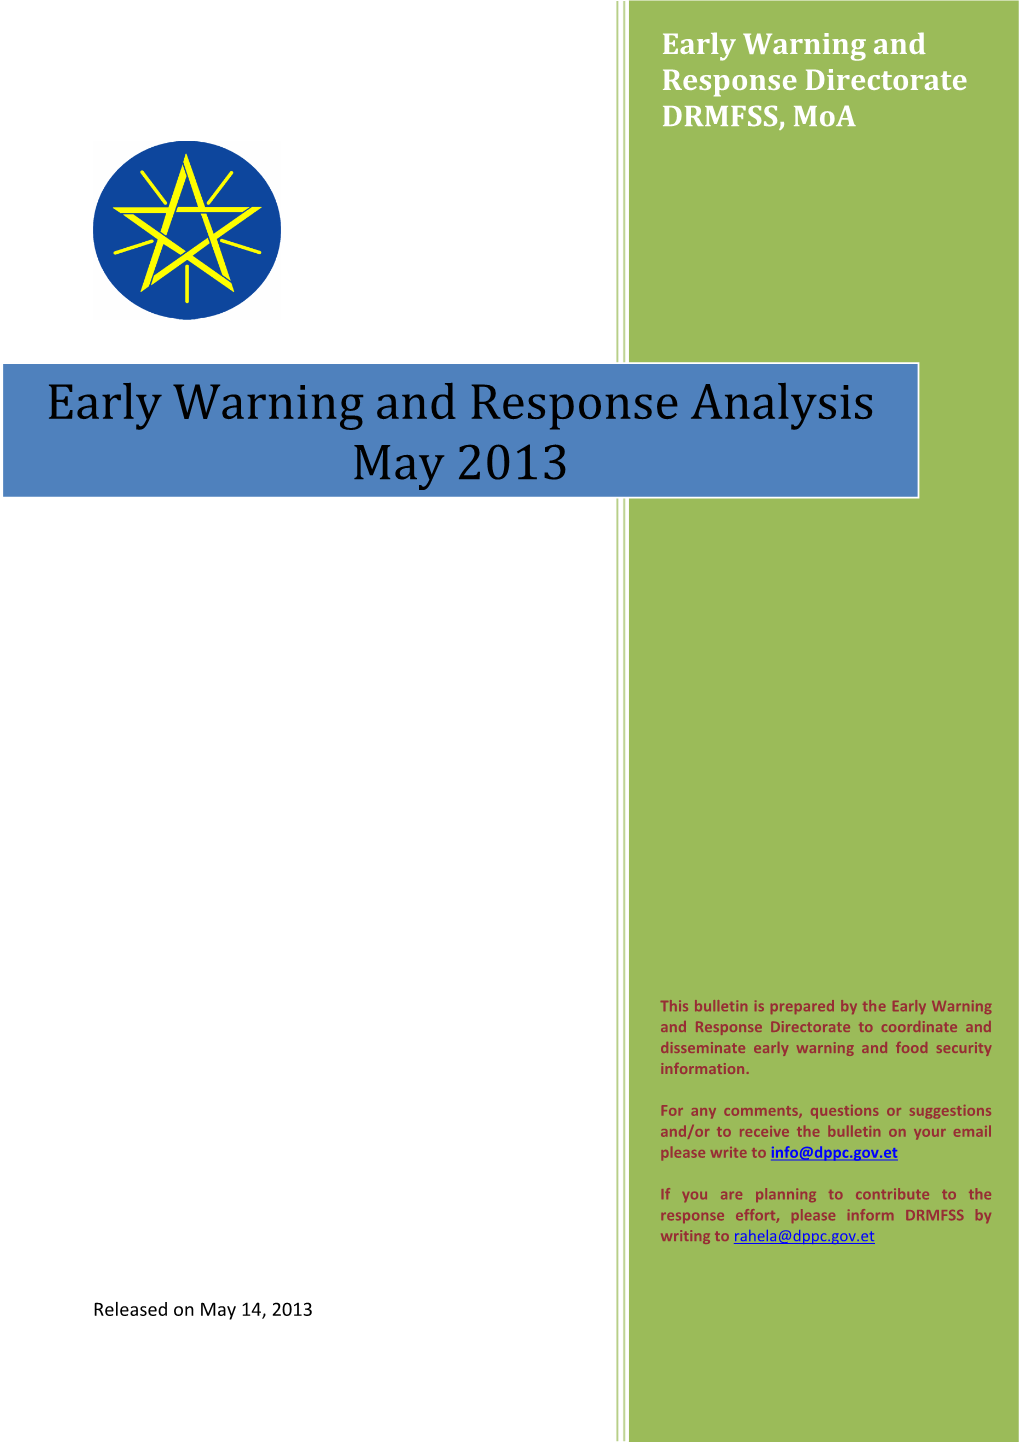 Early Warning and Response Analysis May 2013